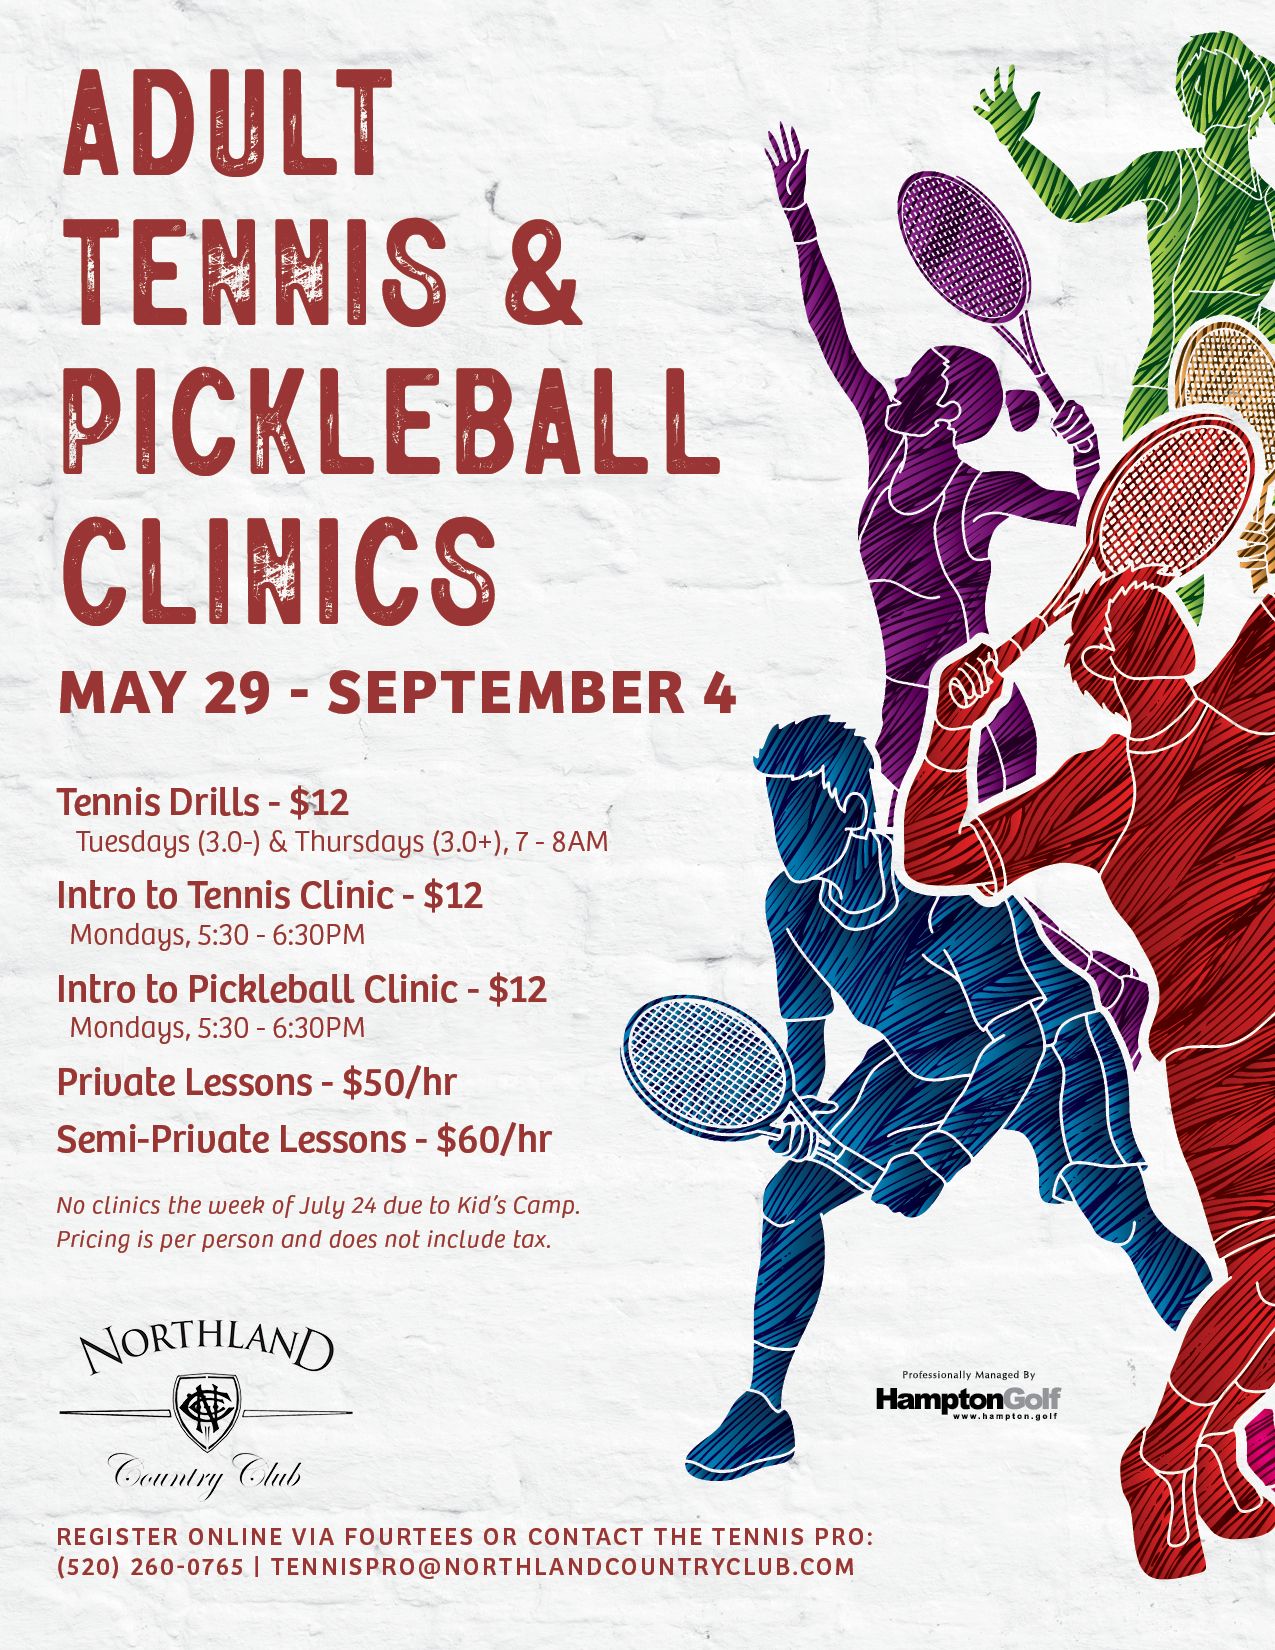 Adult Tennis & Pickleball Clinics